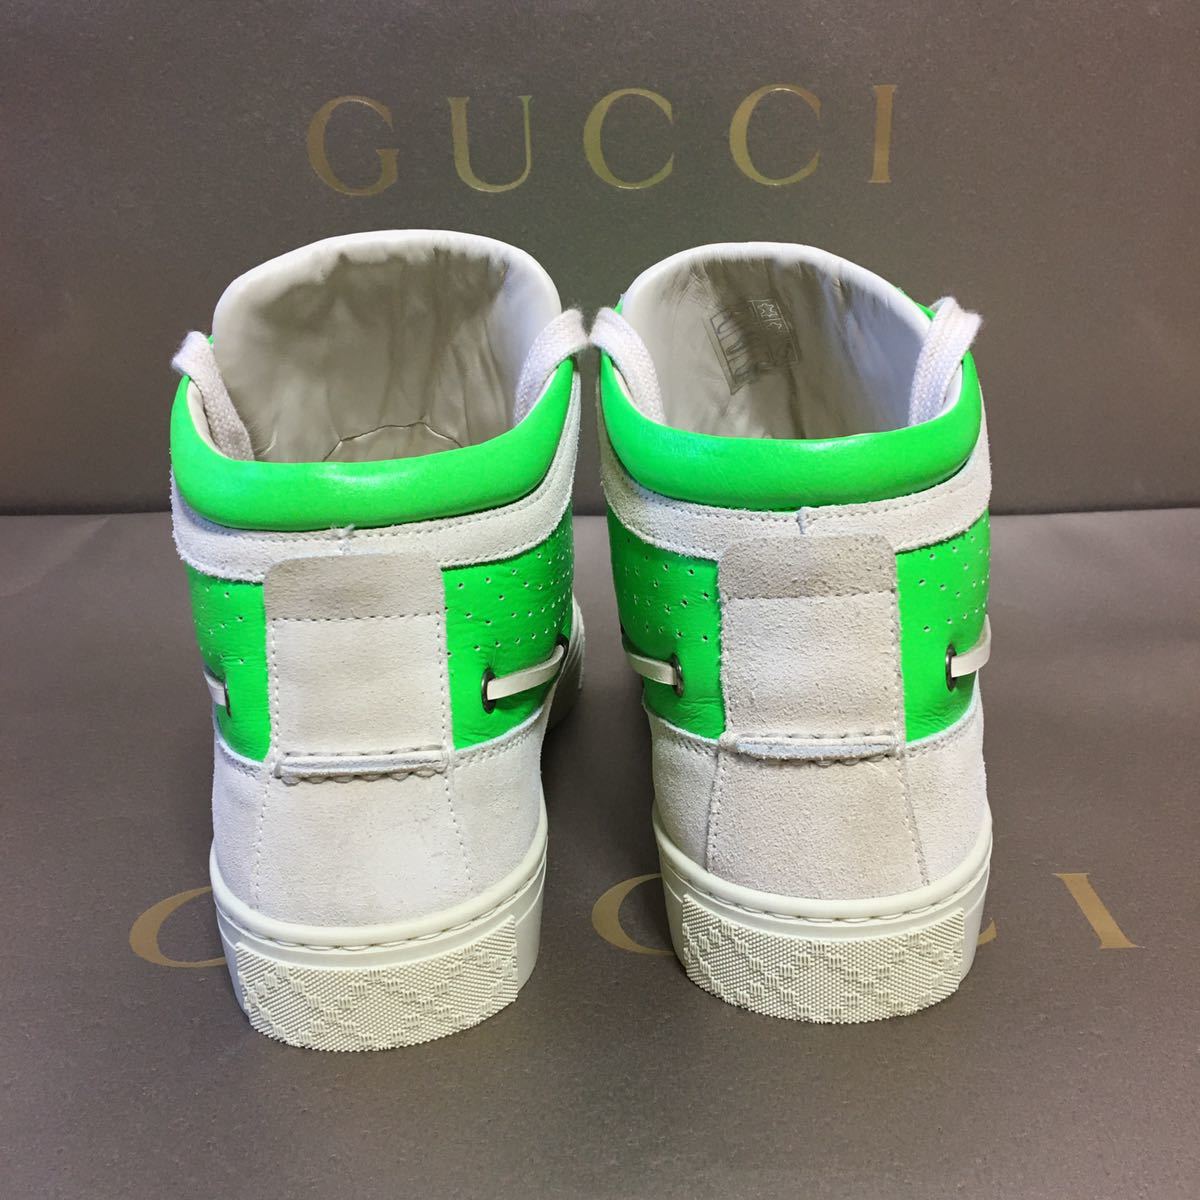  обычная цена примерно 13 десять тысяч Gucci новый товар Diamante - ikatto кожа спортивные туфли ограничение 